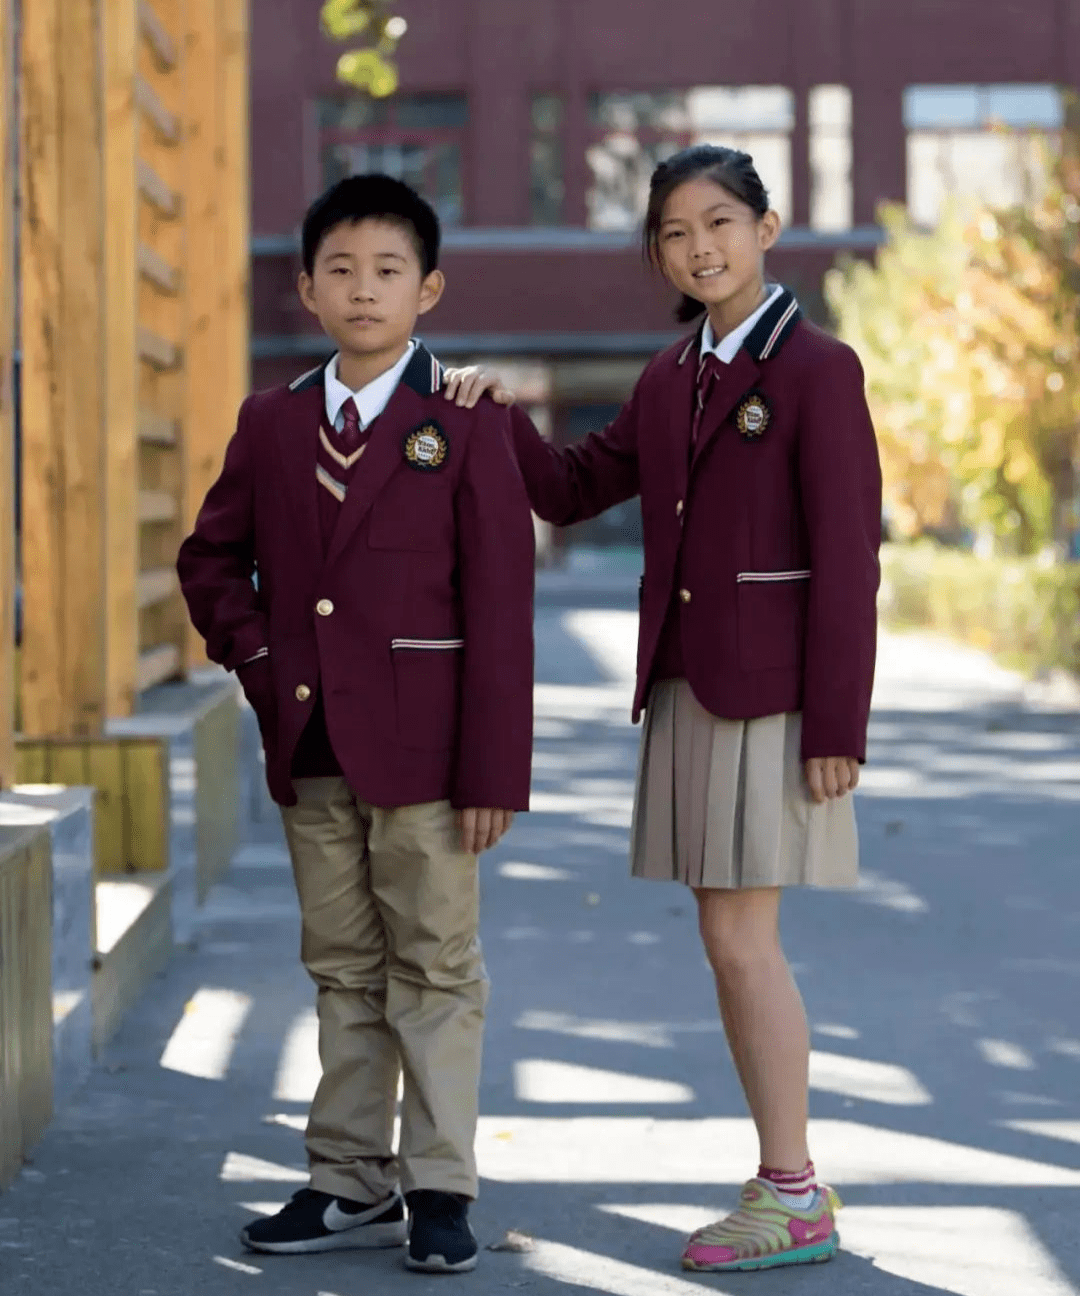 04 北京市十一学校一分校 ▌对校服的描述:十一学校一分校校服,款式